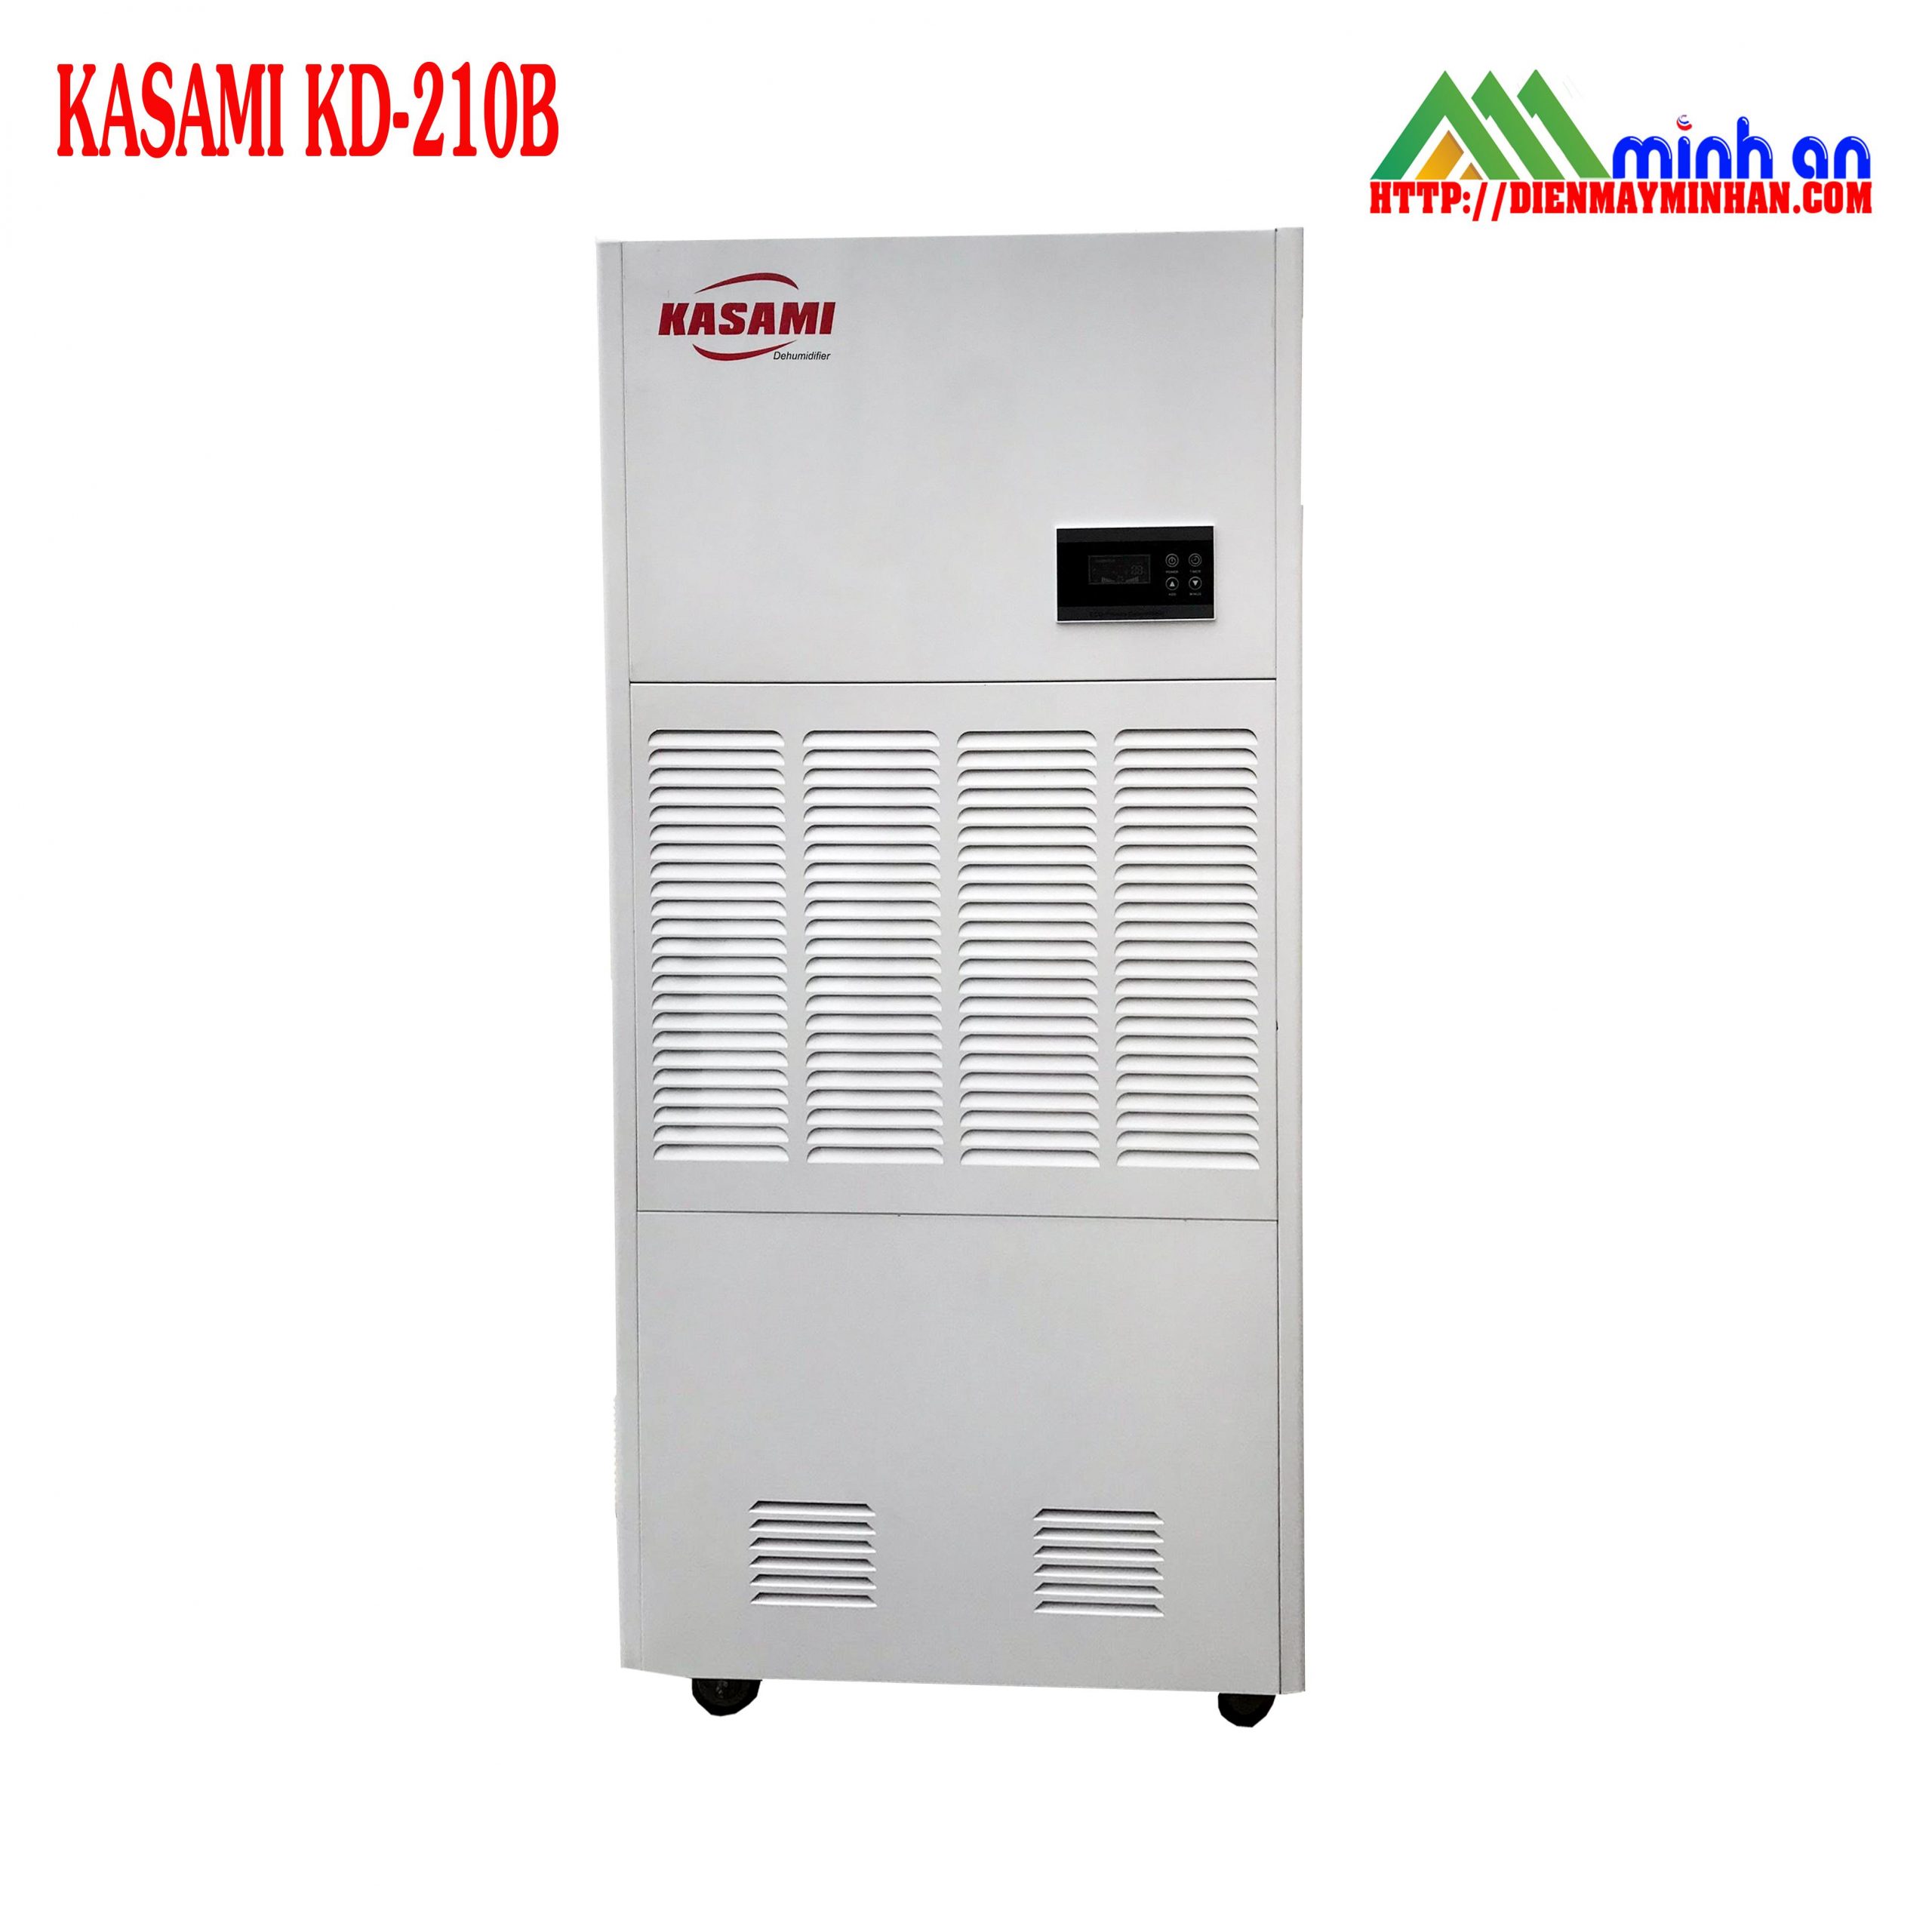 Máy hút ẩm công nghiệp Kasami KD-210B